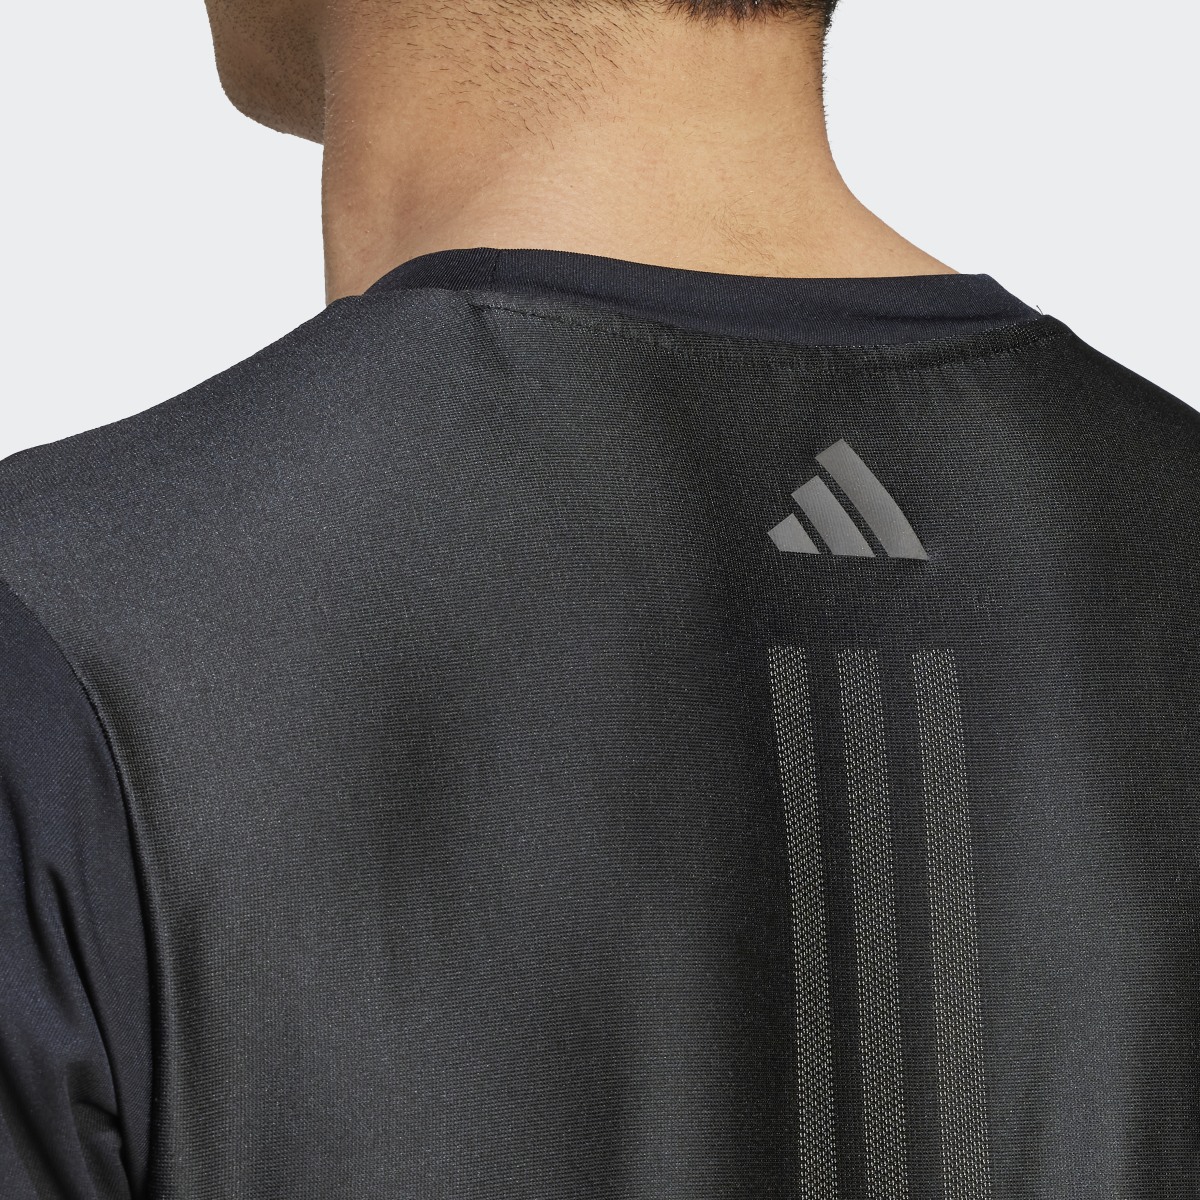 Adidas Koszulka HIIT Workout 3-Stripes. 7